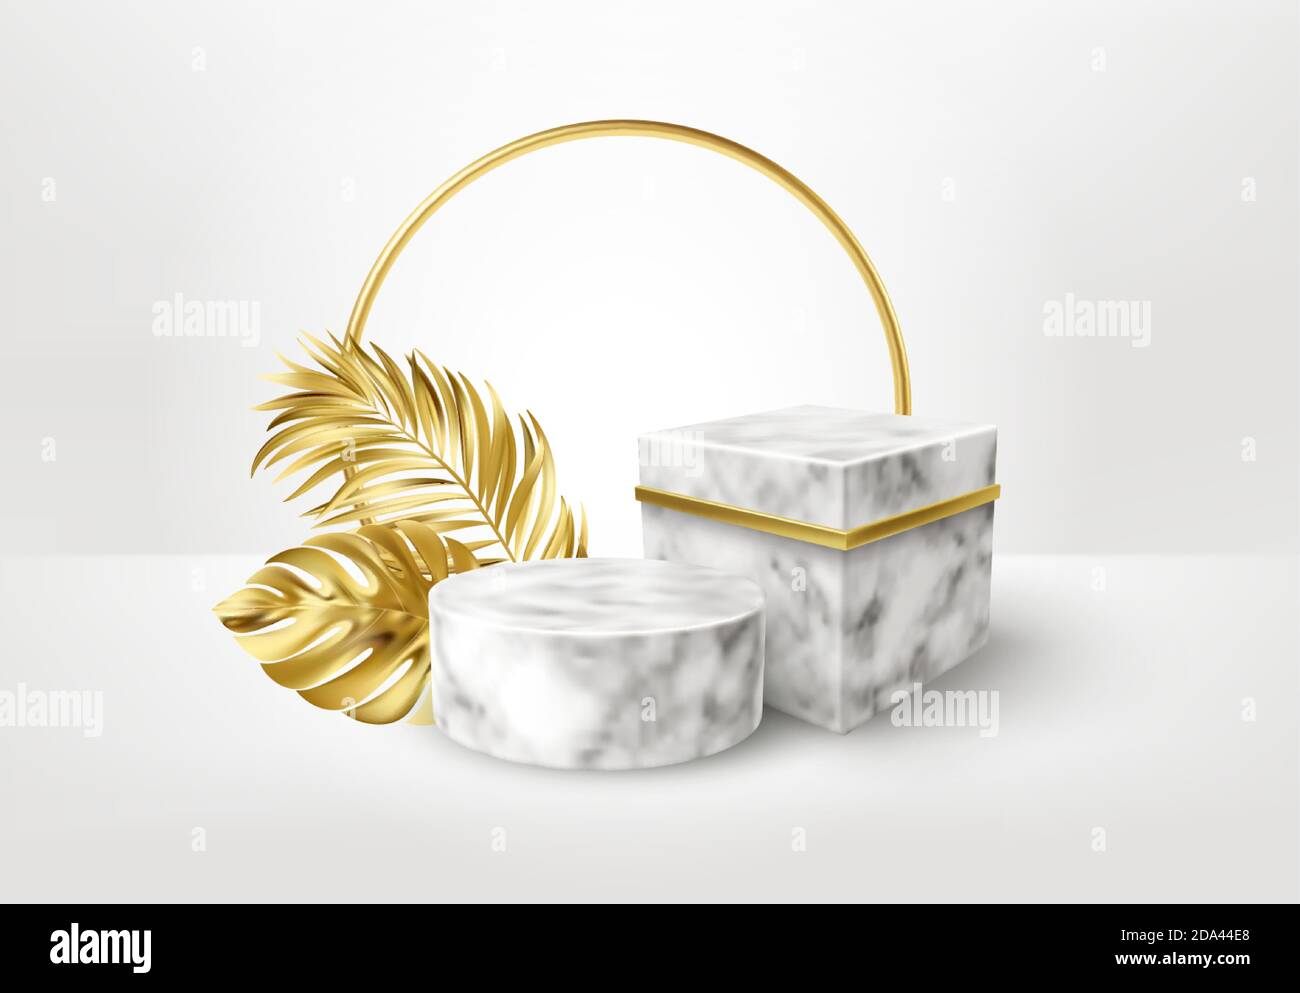 piedistallo in marmo bianco e nero 3d realistico su sfondo bianco con foglie di palma dorate. Spazio vuoto design lusso mockup scena per il prodotto. Vettore Illustrazione Vettoriale